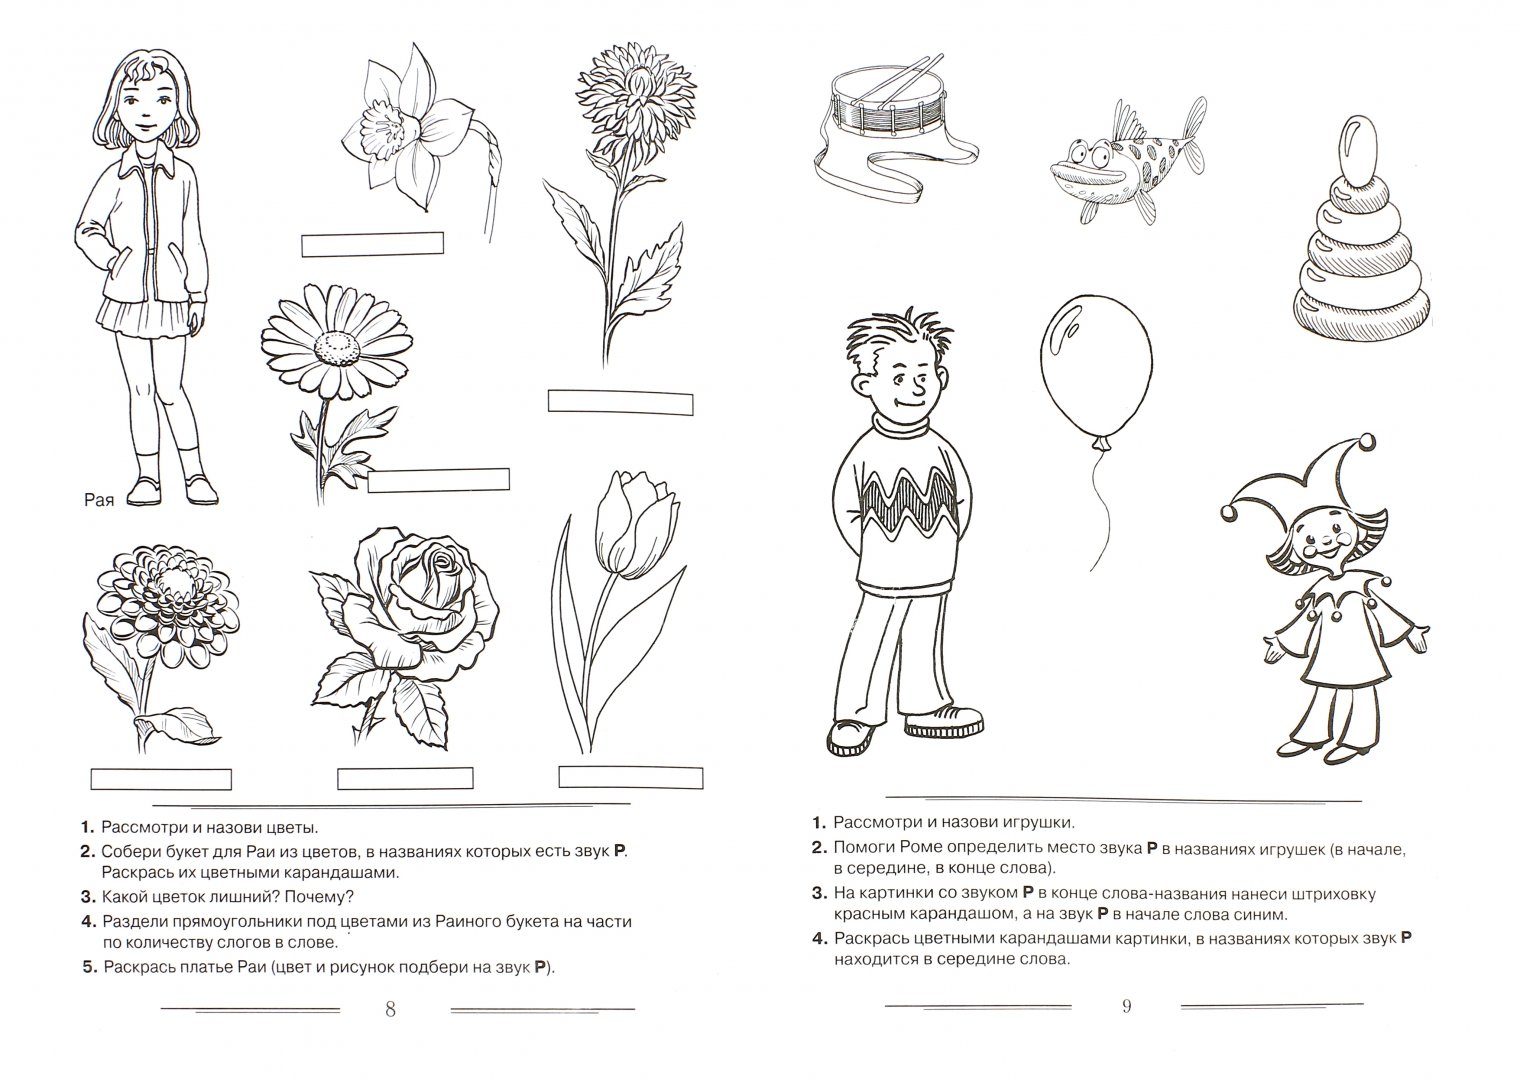 Иллюстрация 1 из 18 для Логопедическая раскраска для закрепления произношения звука "Р". Пособие для логопедов, родителей - Коноваленко, Коноваленко | Лабиринт - книги. Источник: Лабиринт